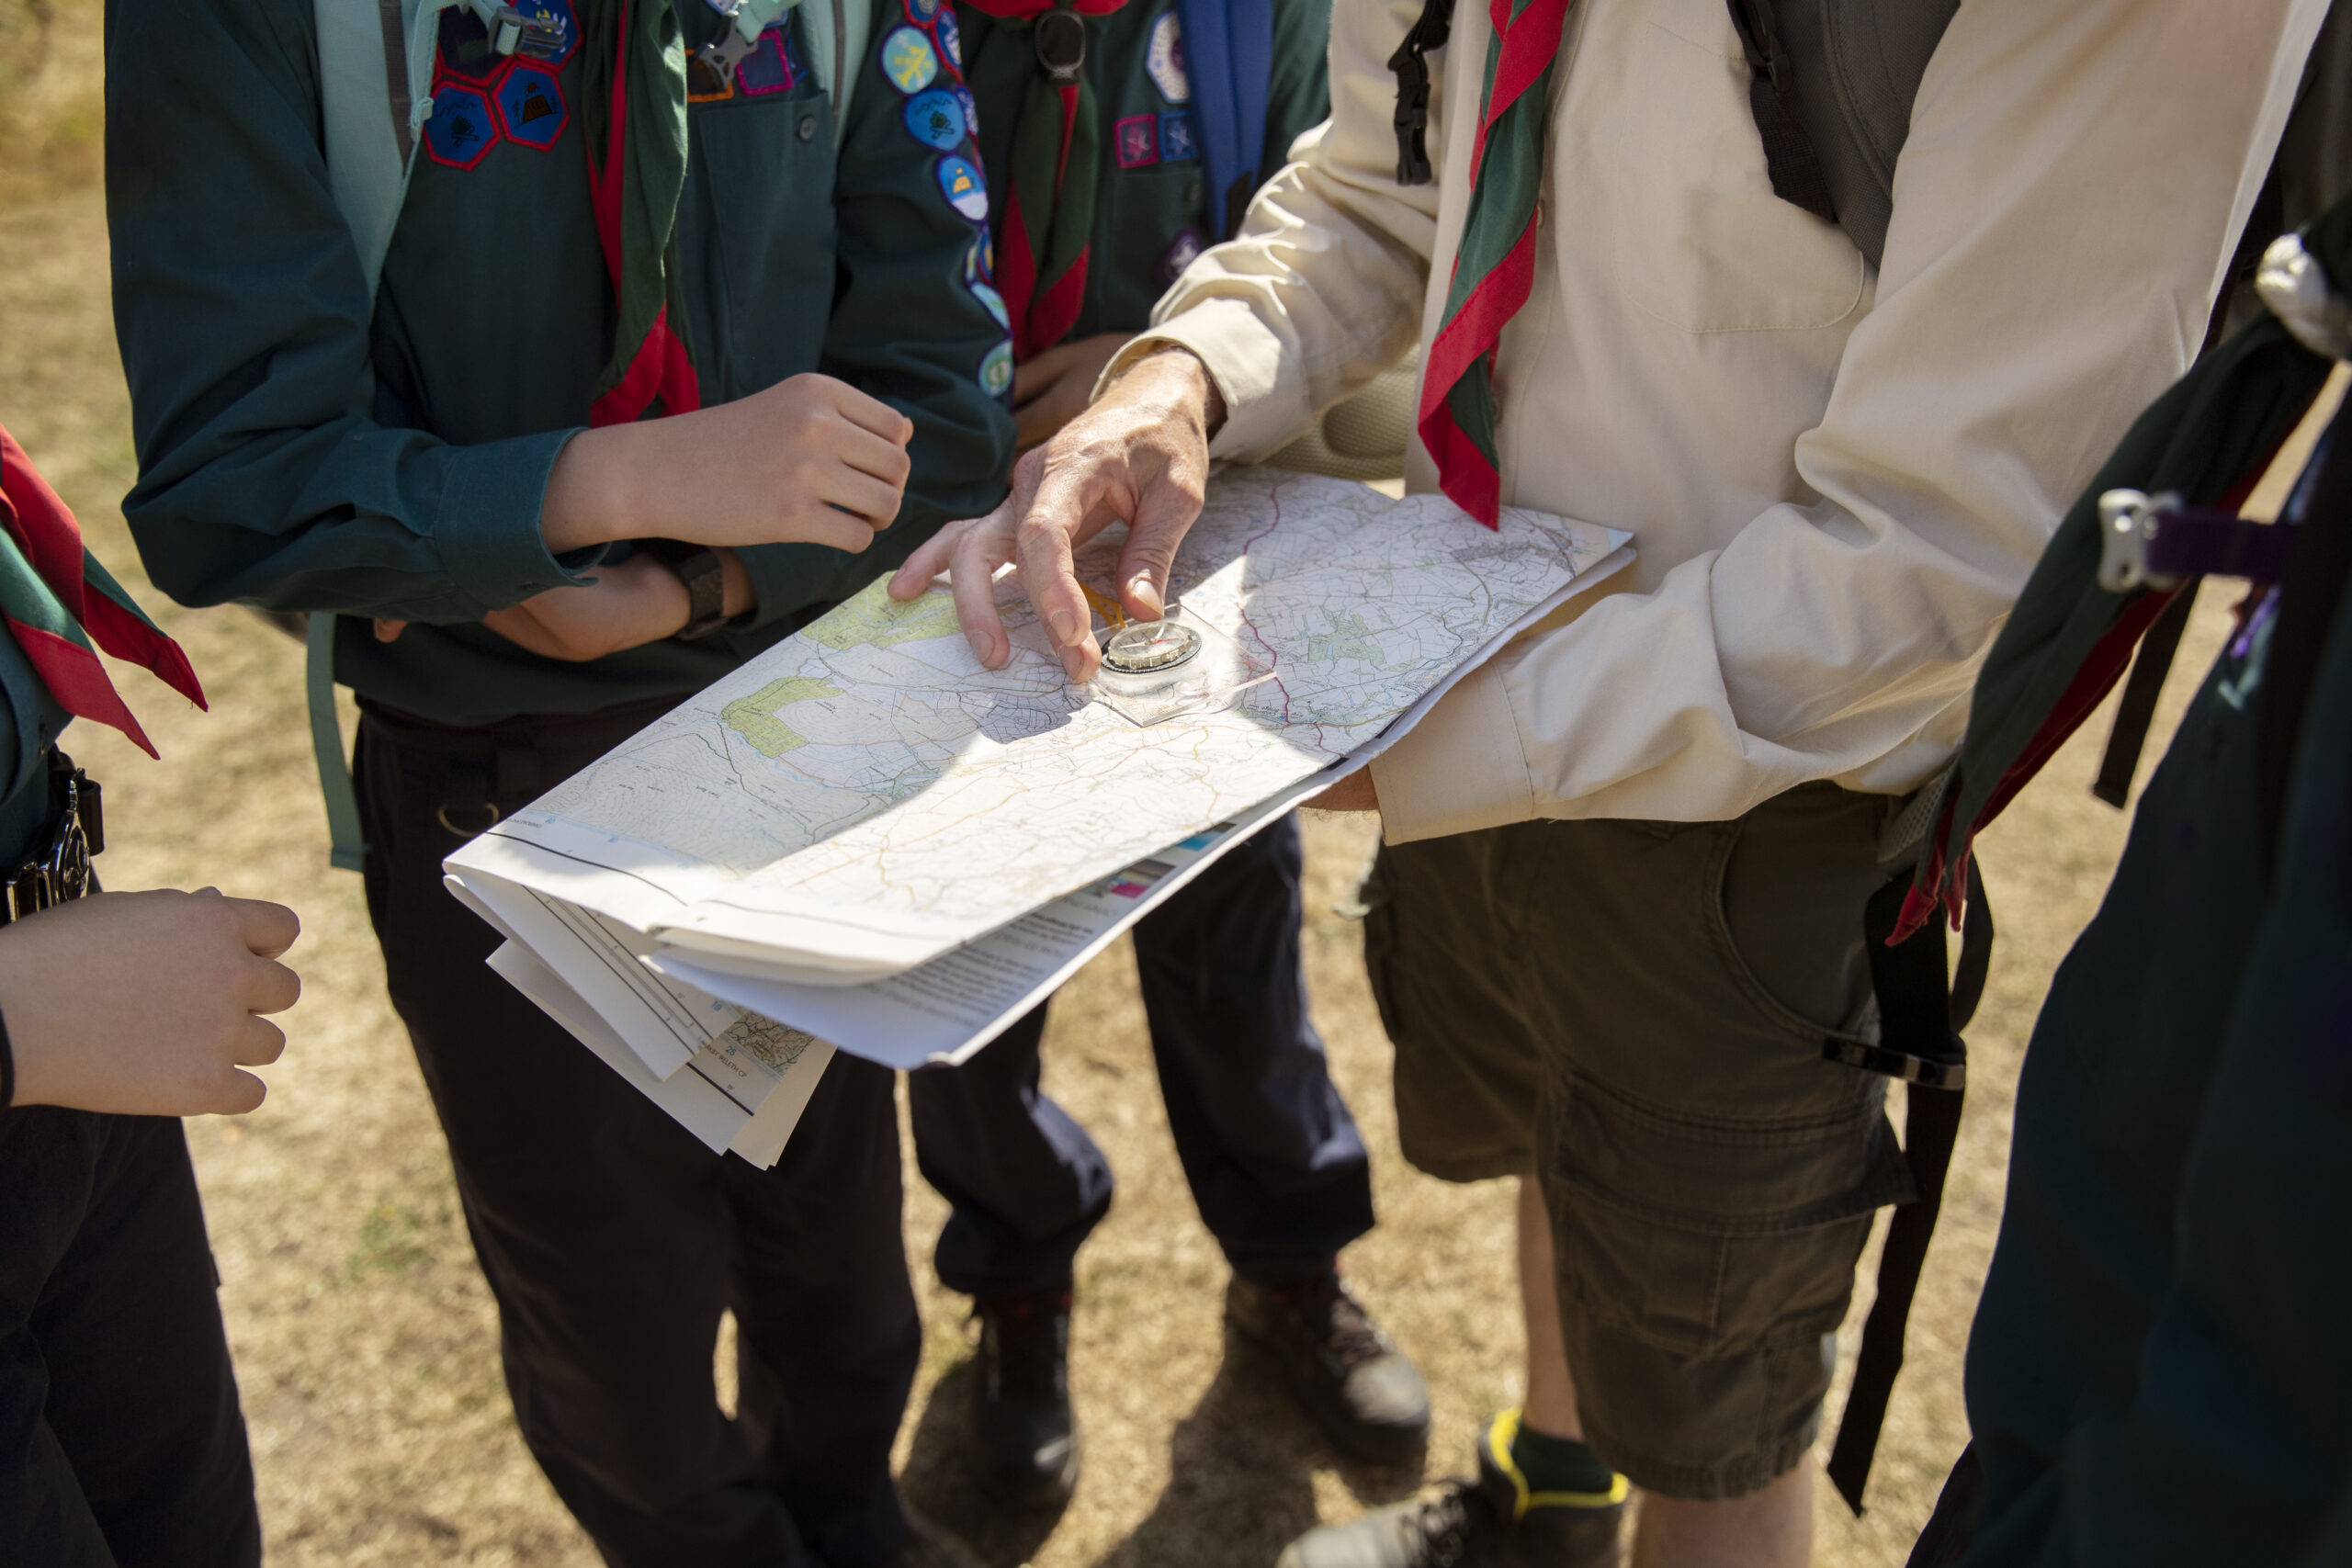 Widok harcerzy trzymających mapę i kompas podczas gry terenowej